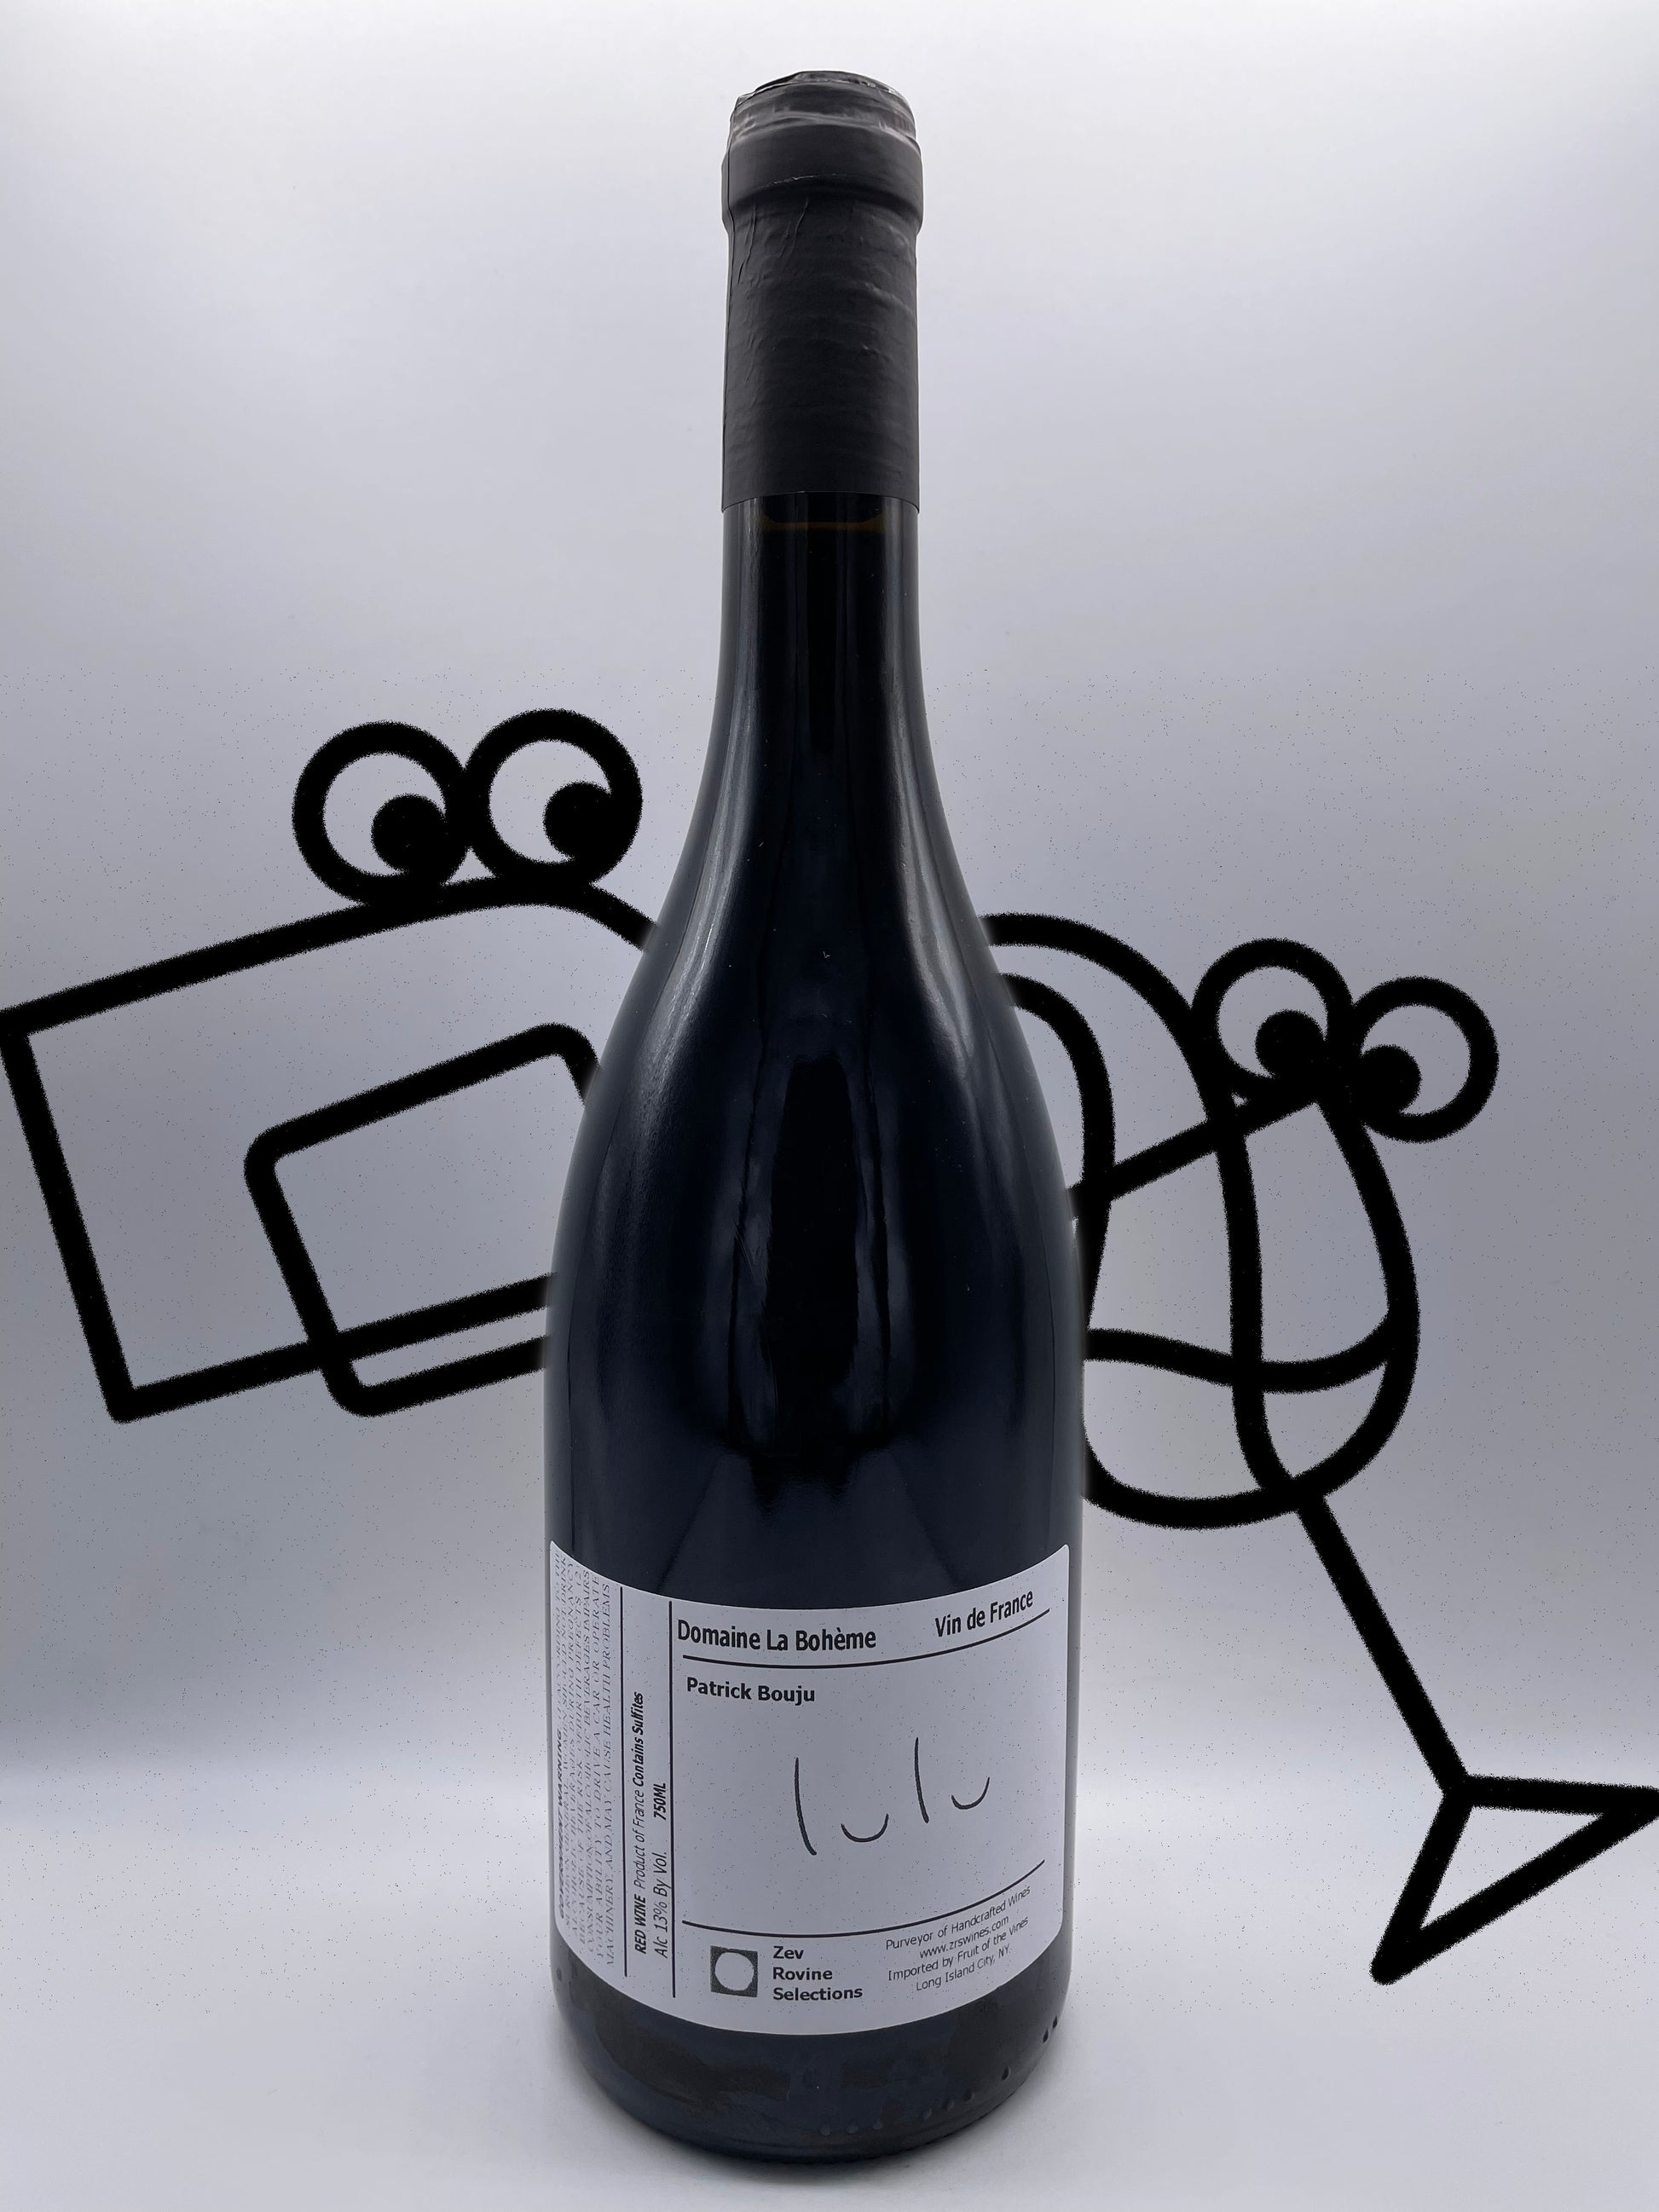 Domaine la Bohème 'Lulu' 2019 Loire Valley, France - Williston Park Wines & Spirits